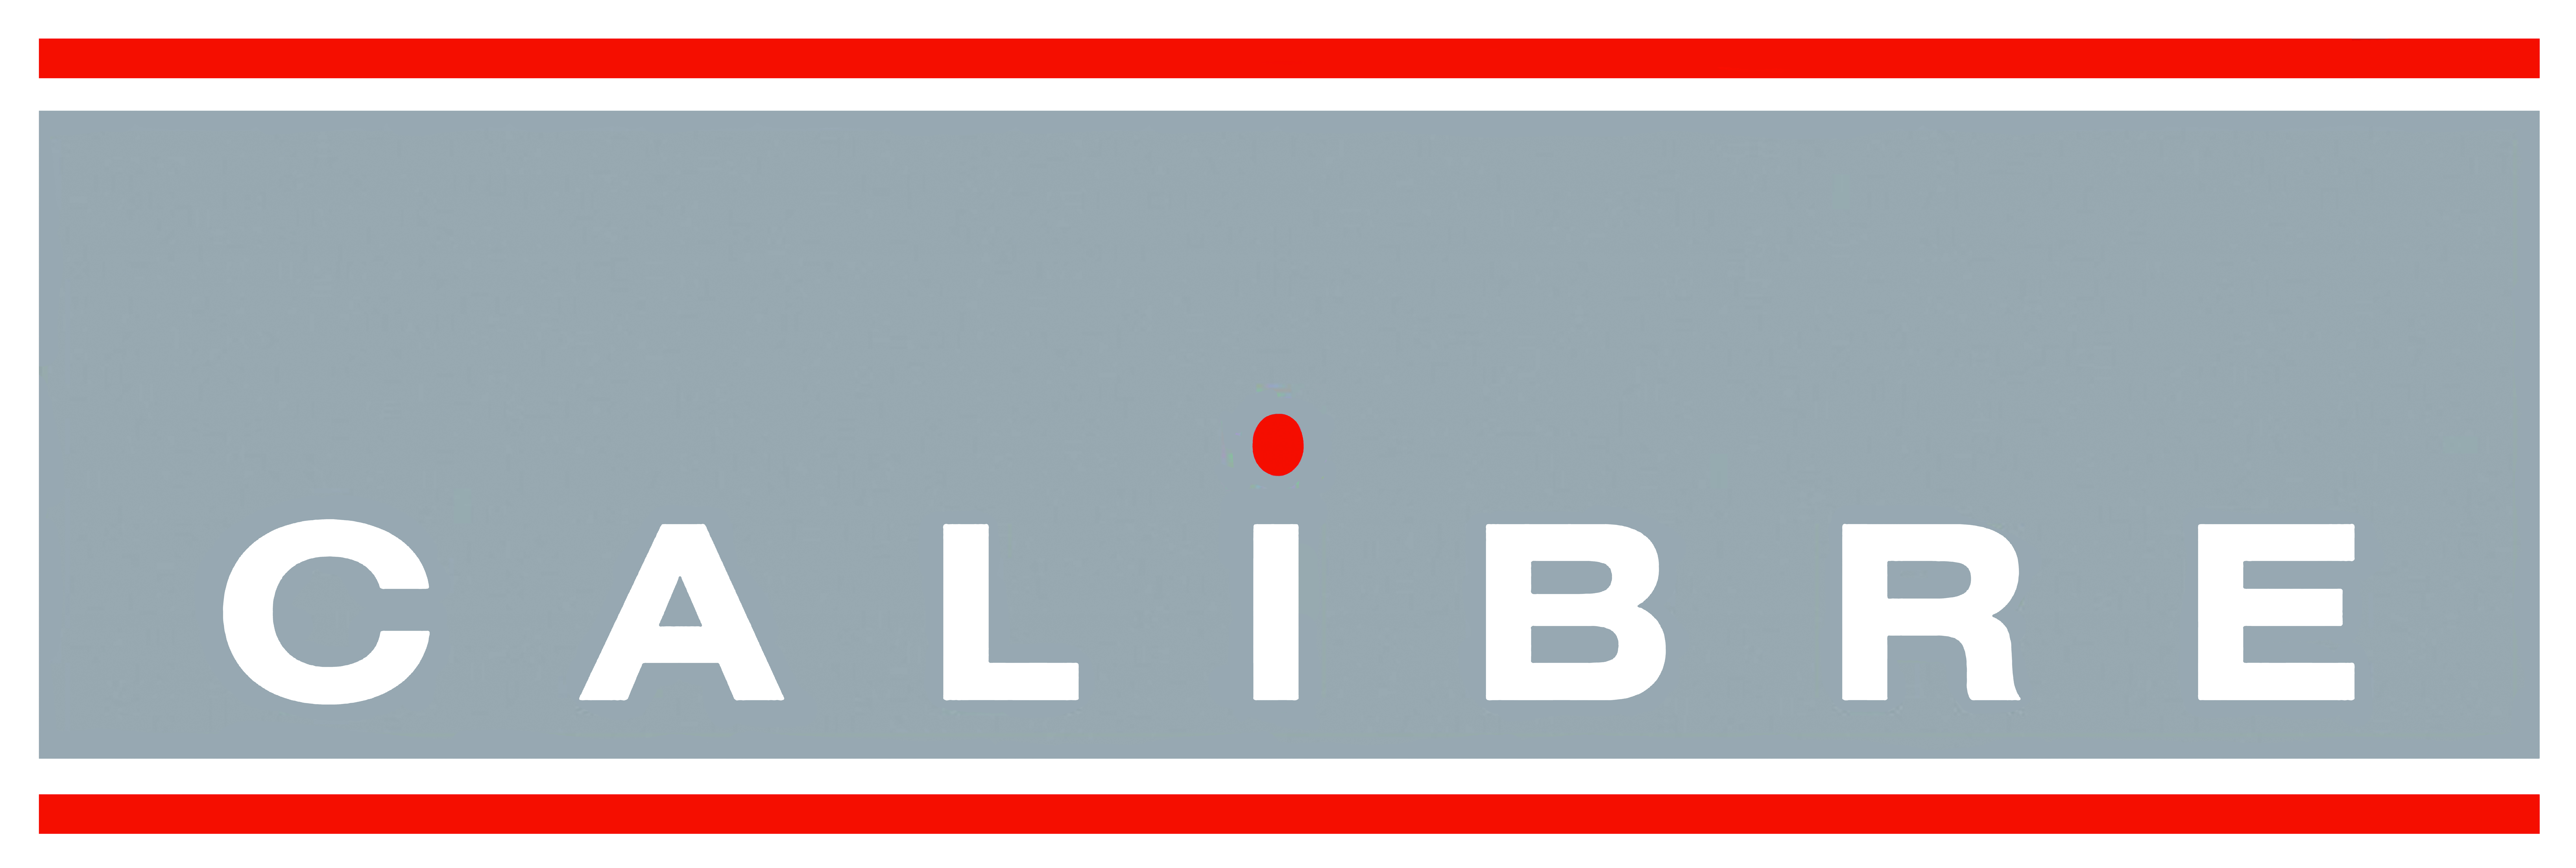 File:Calibre logo.png